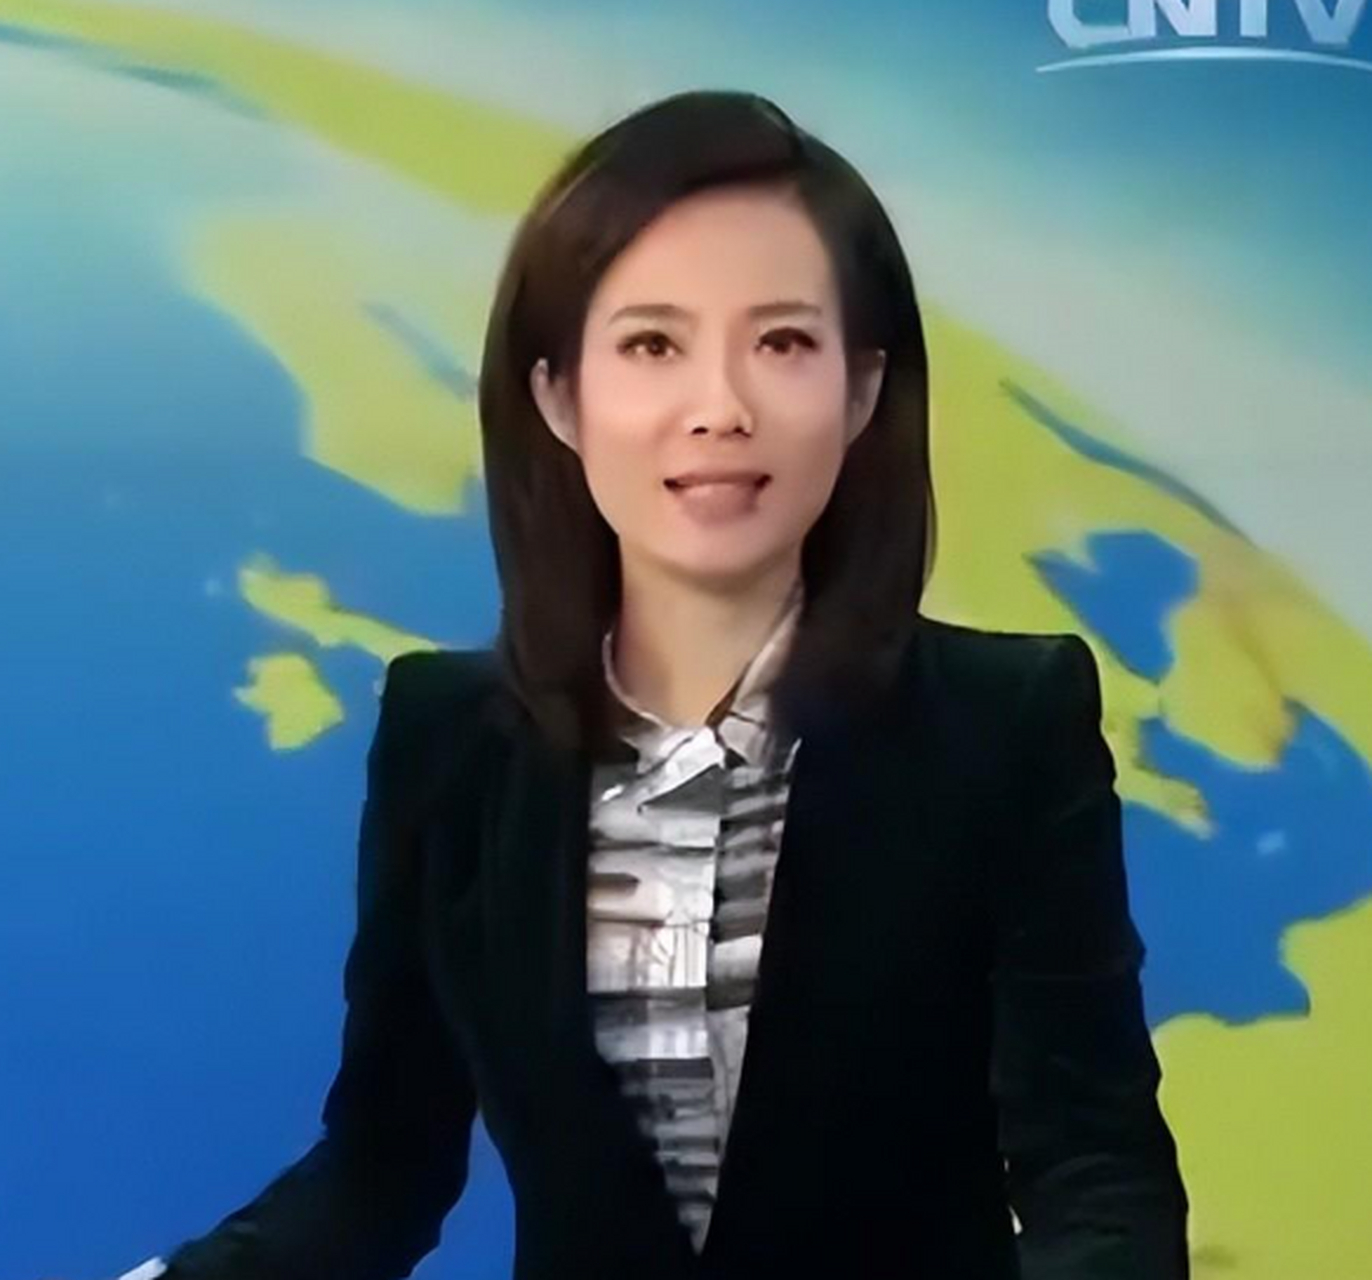 央视主持宝晓峰:从内蒙古走出的美女主播,44岁单身未婚 前段时间,宝